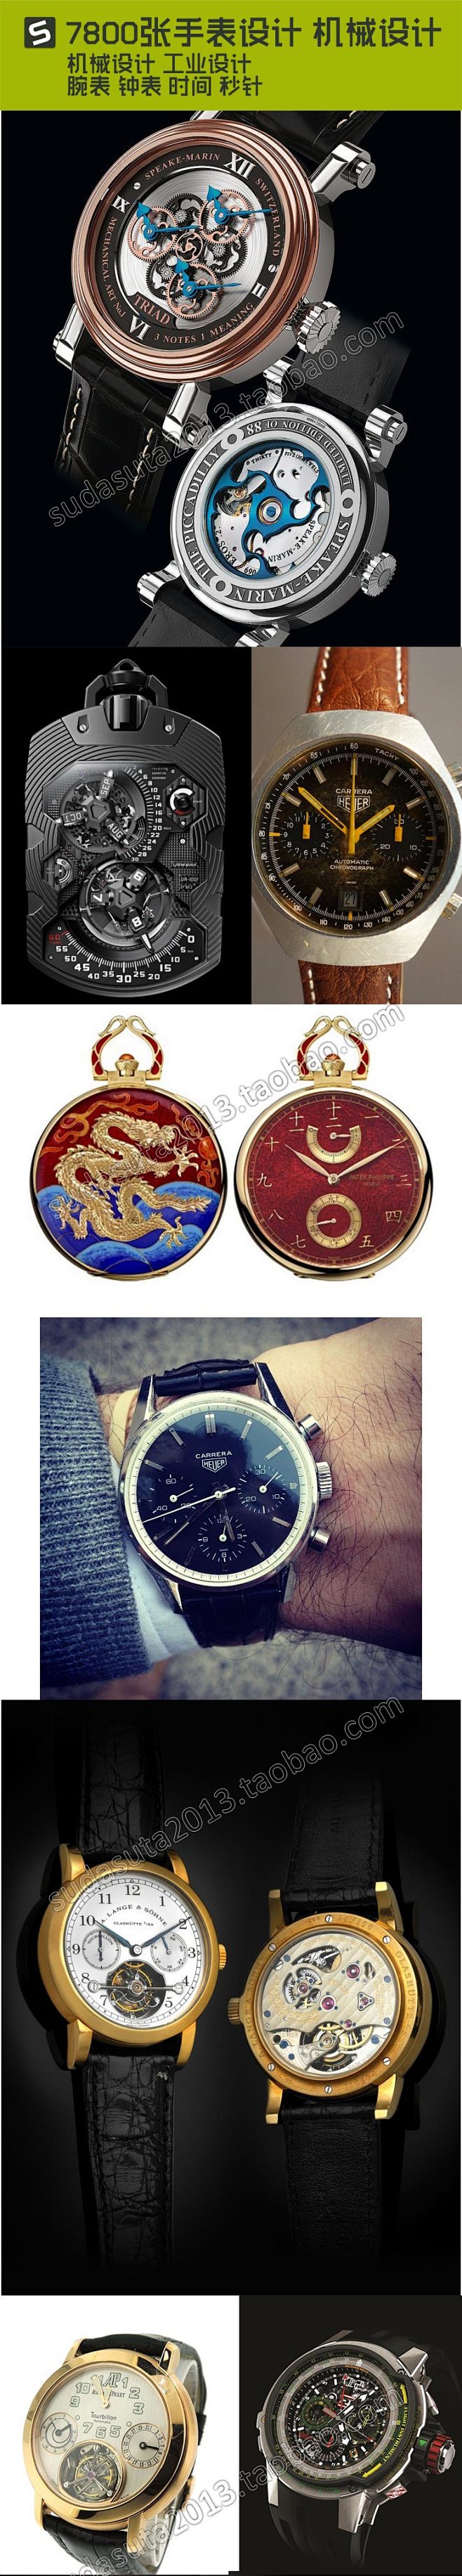 7800张手表设计 机械设计工业设计腕表...